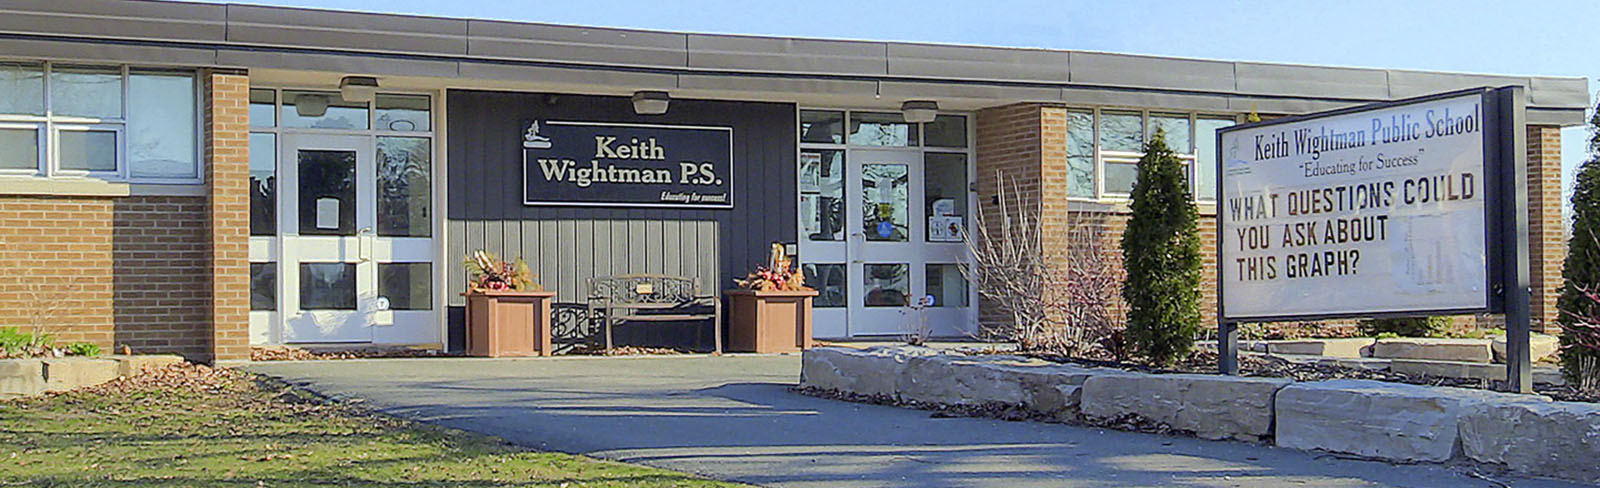 image of Keith Wightman Public School